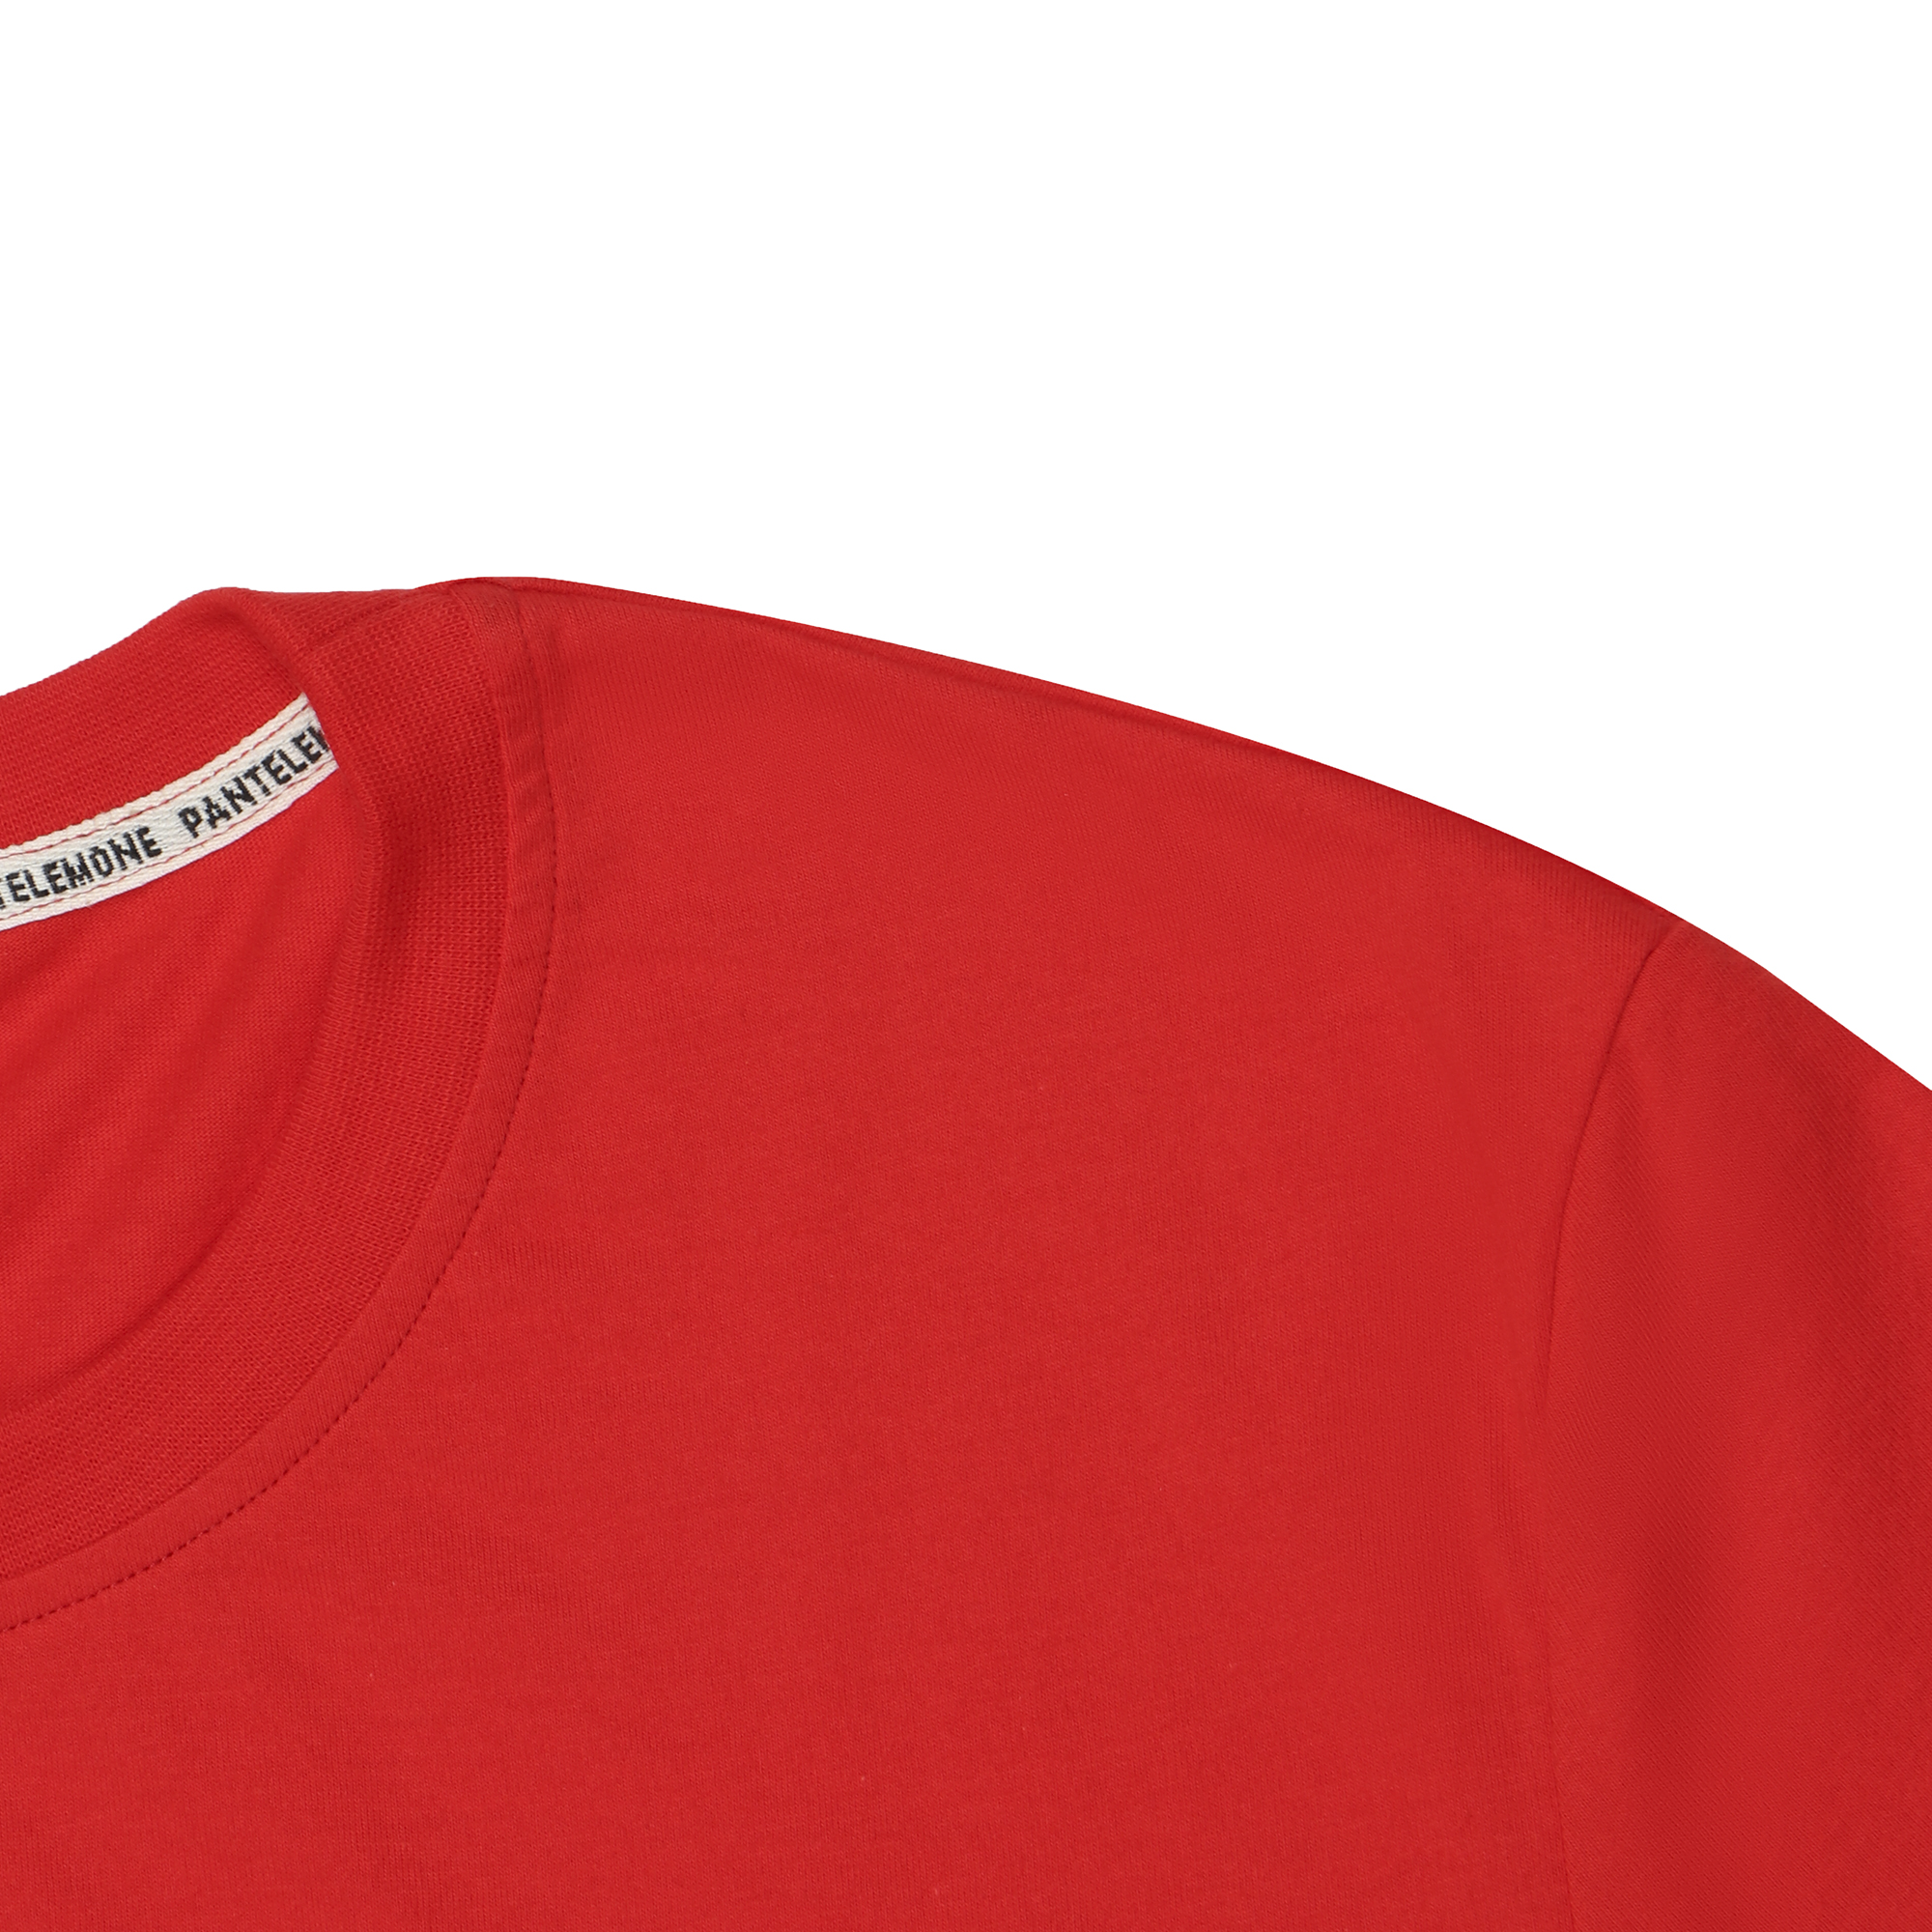 Мужская футболка Pantelemone MF-913 46 красная, цвет красный, размер 46 - фото 2